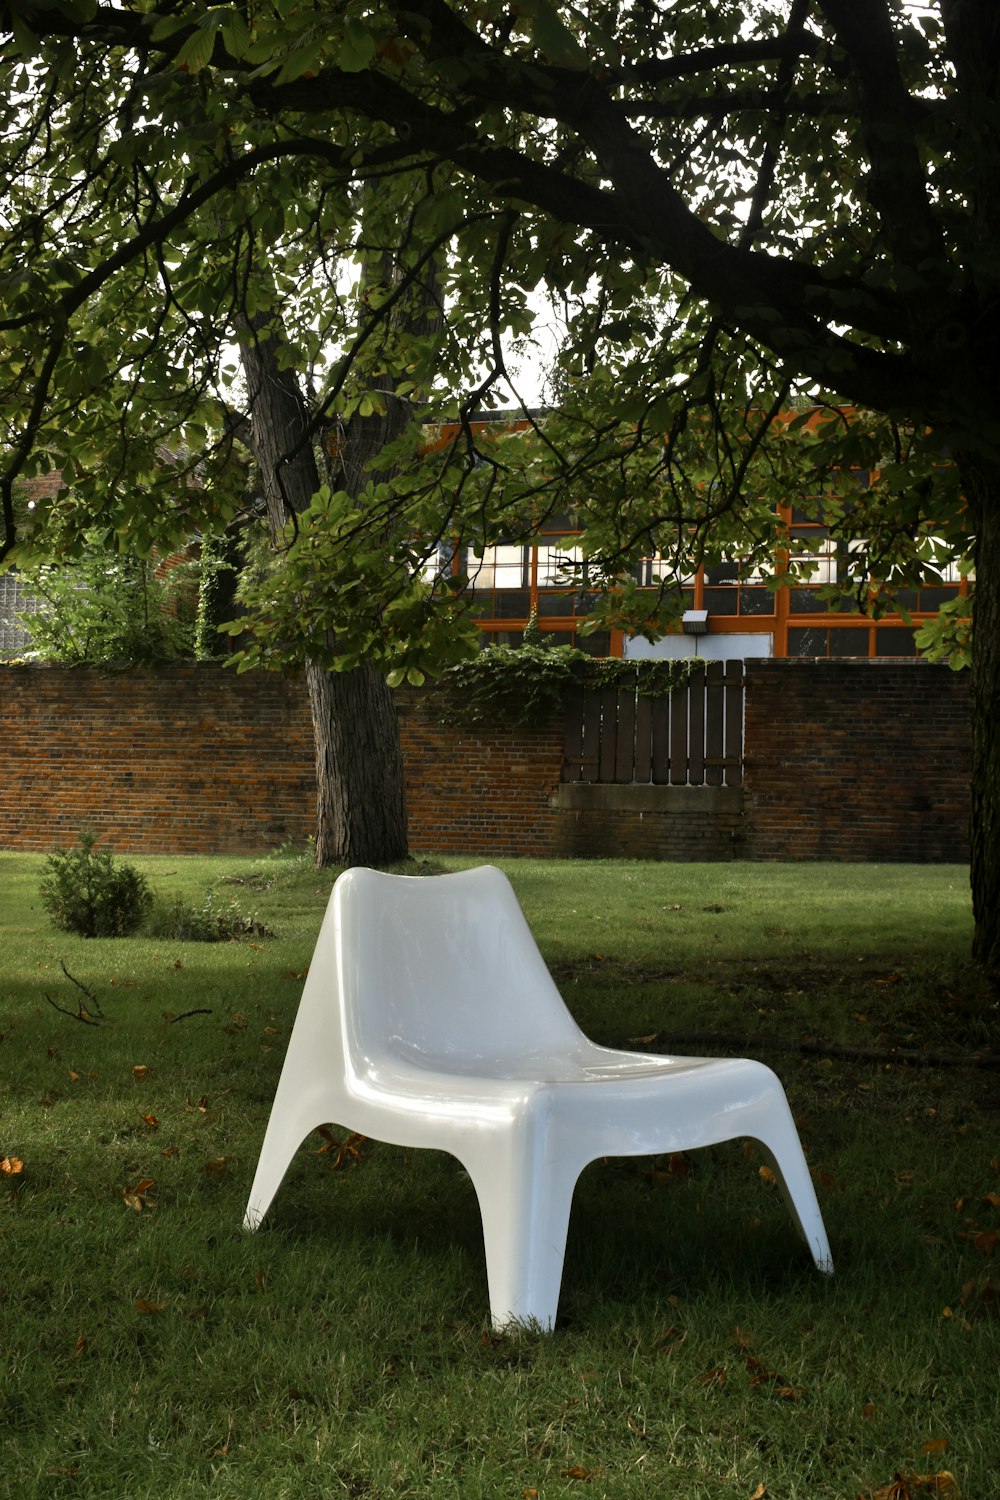 Foto zum Thema Weißer plastikstuhl auf grünem rasenfeld – Kostenloses Bild  zu Möbel auf Unsplash